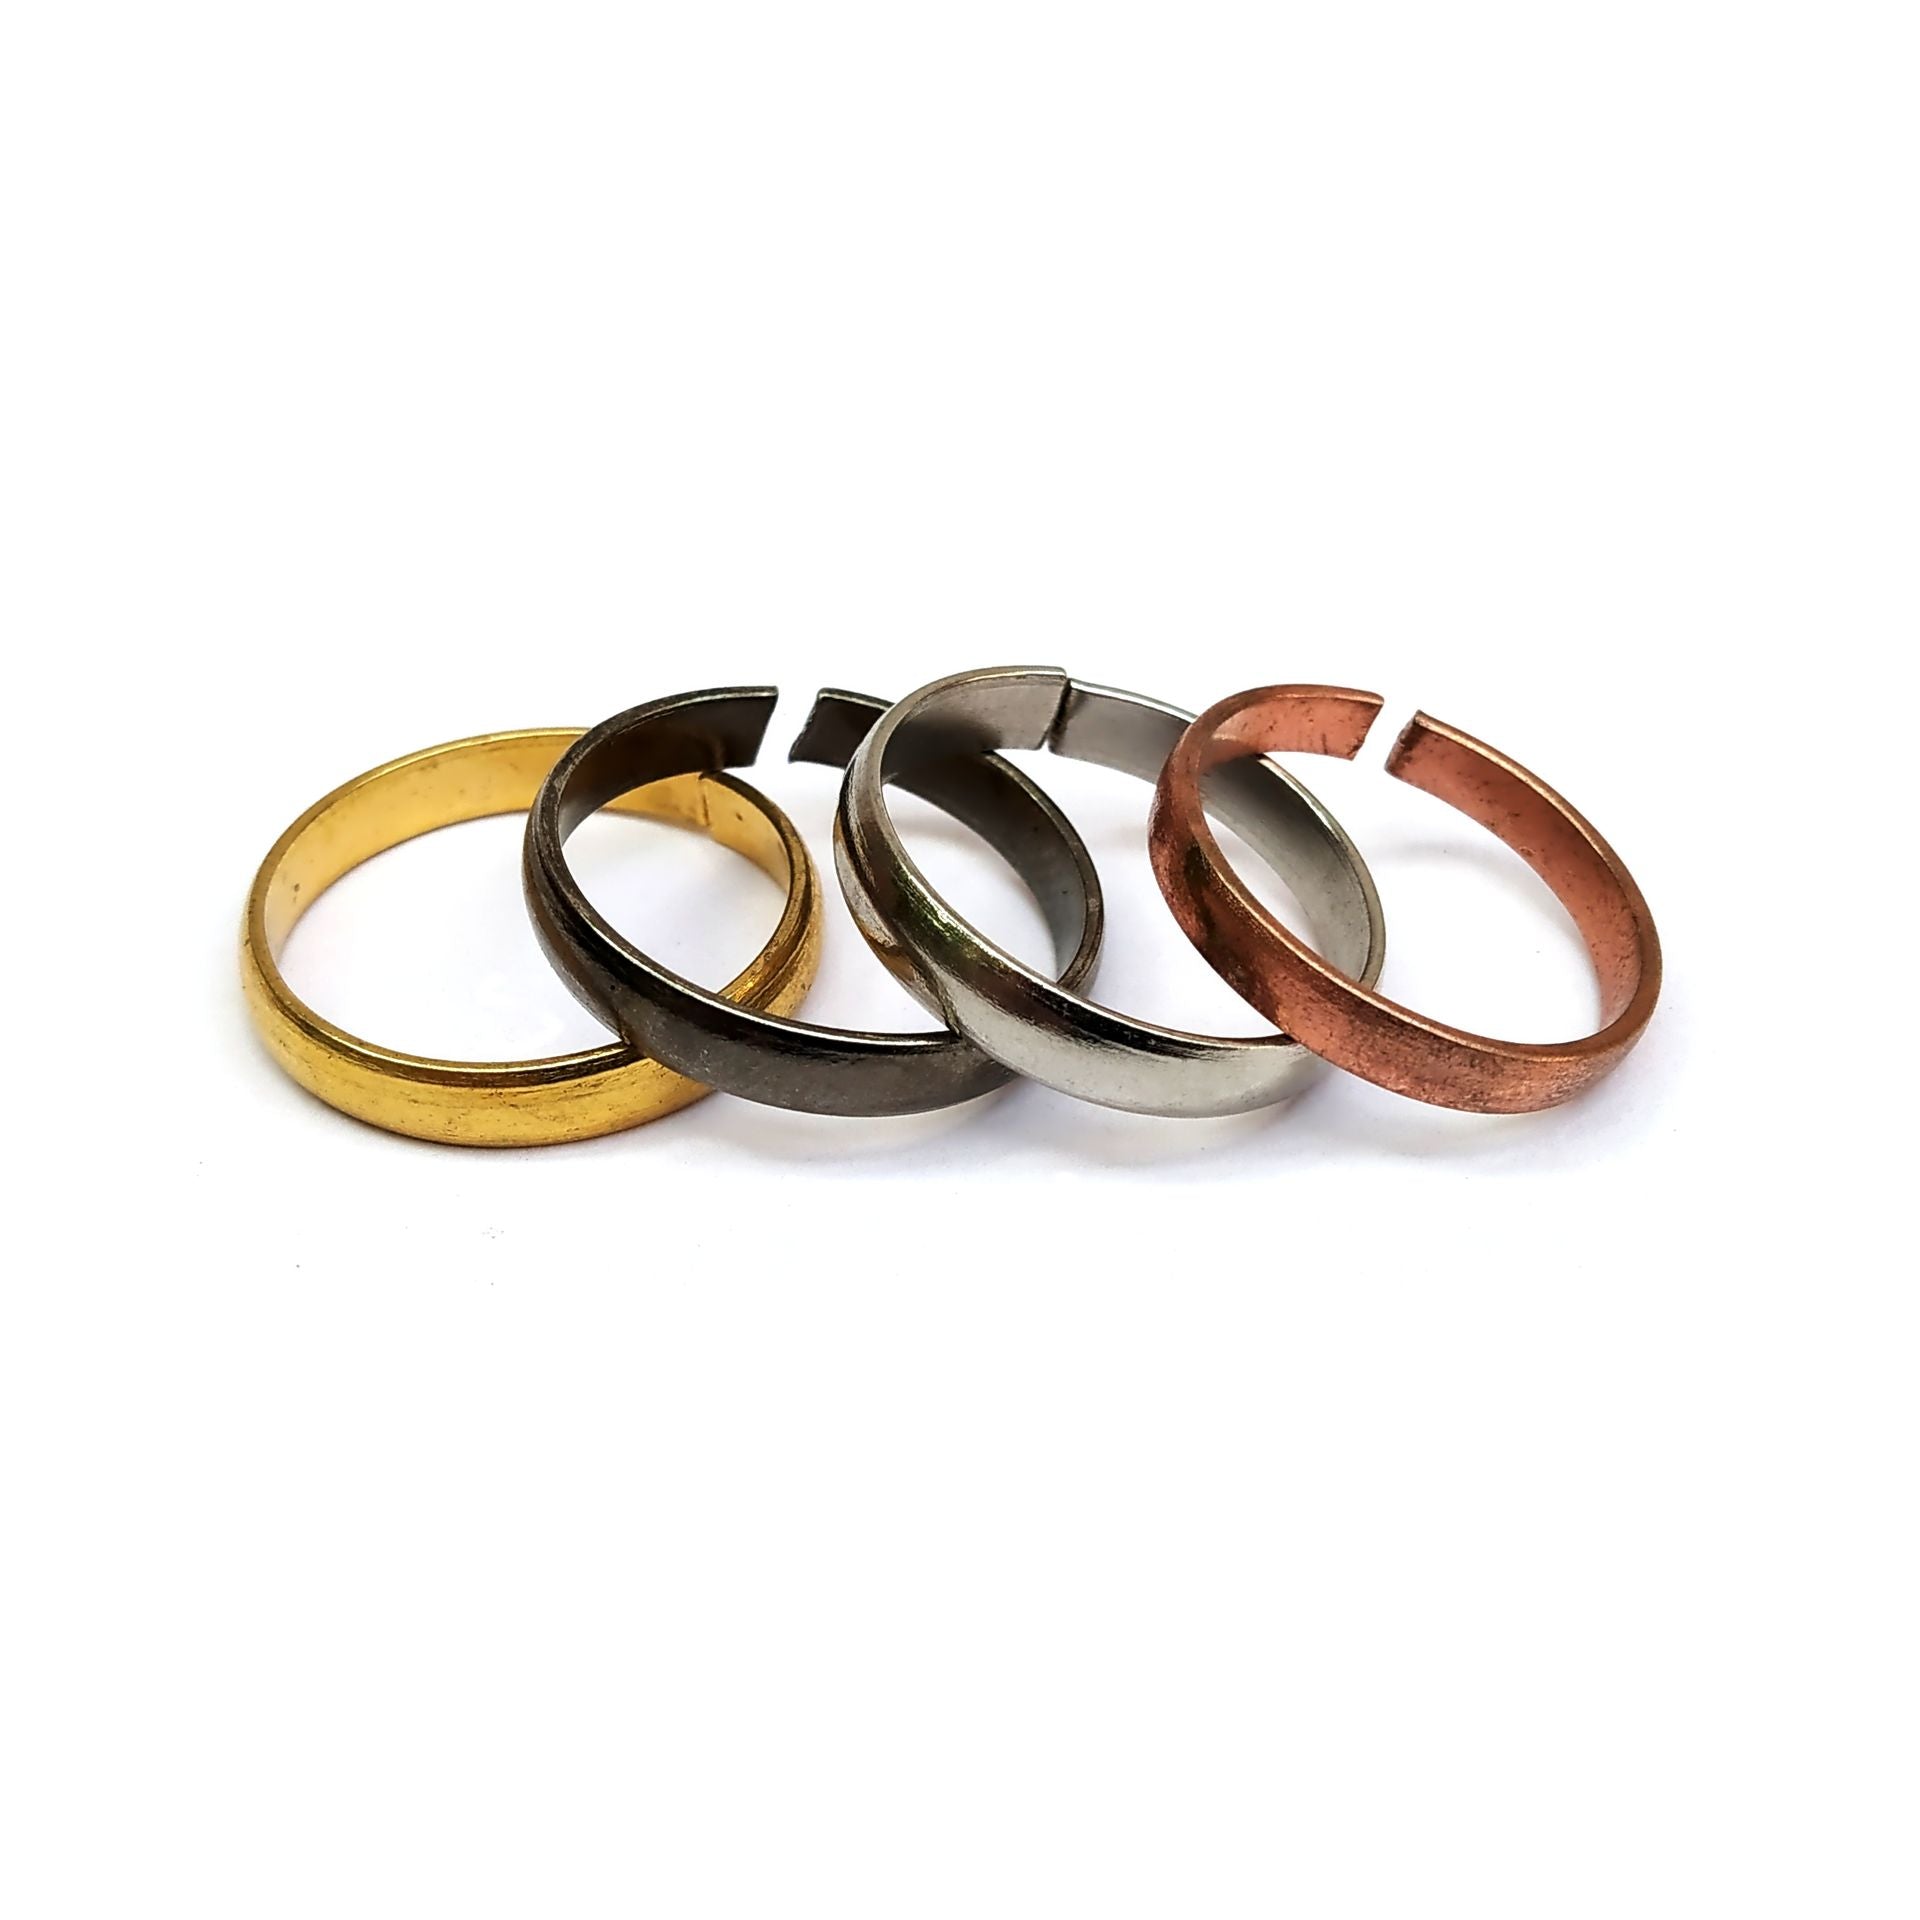 Swaraj Enterprise Set Of 4 Rings (Panch dhatu Ring,Iron Ring,Copper Ring, Steel Ring) for Men